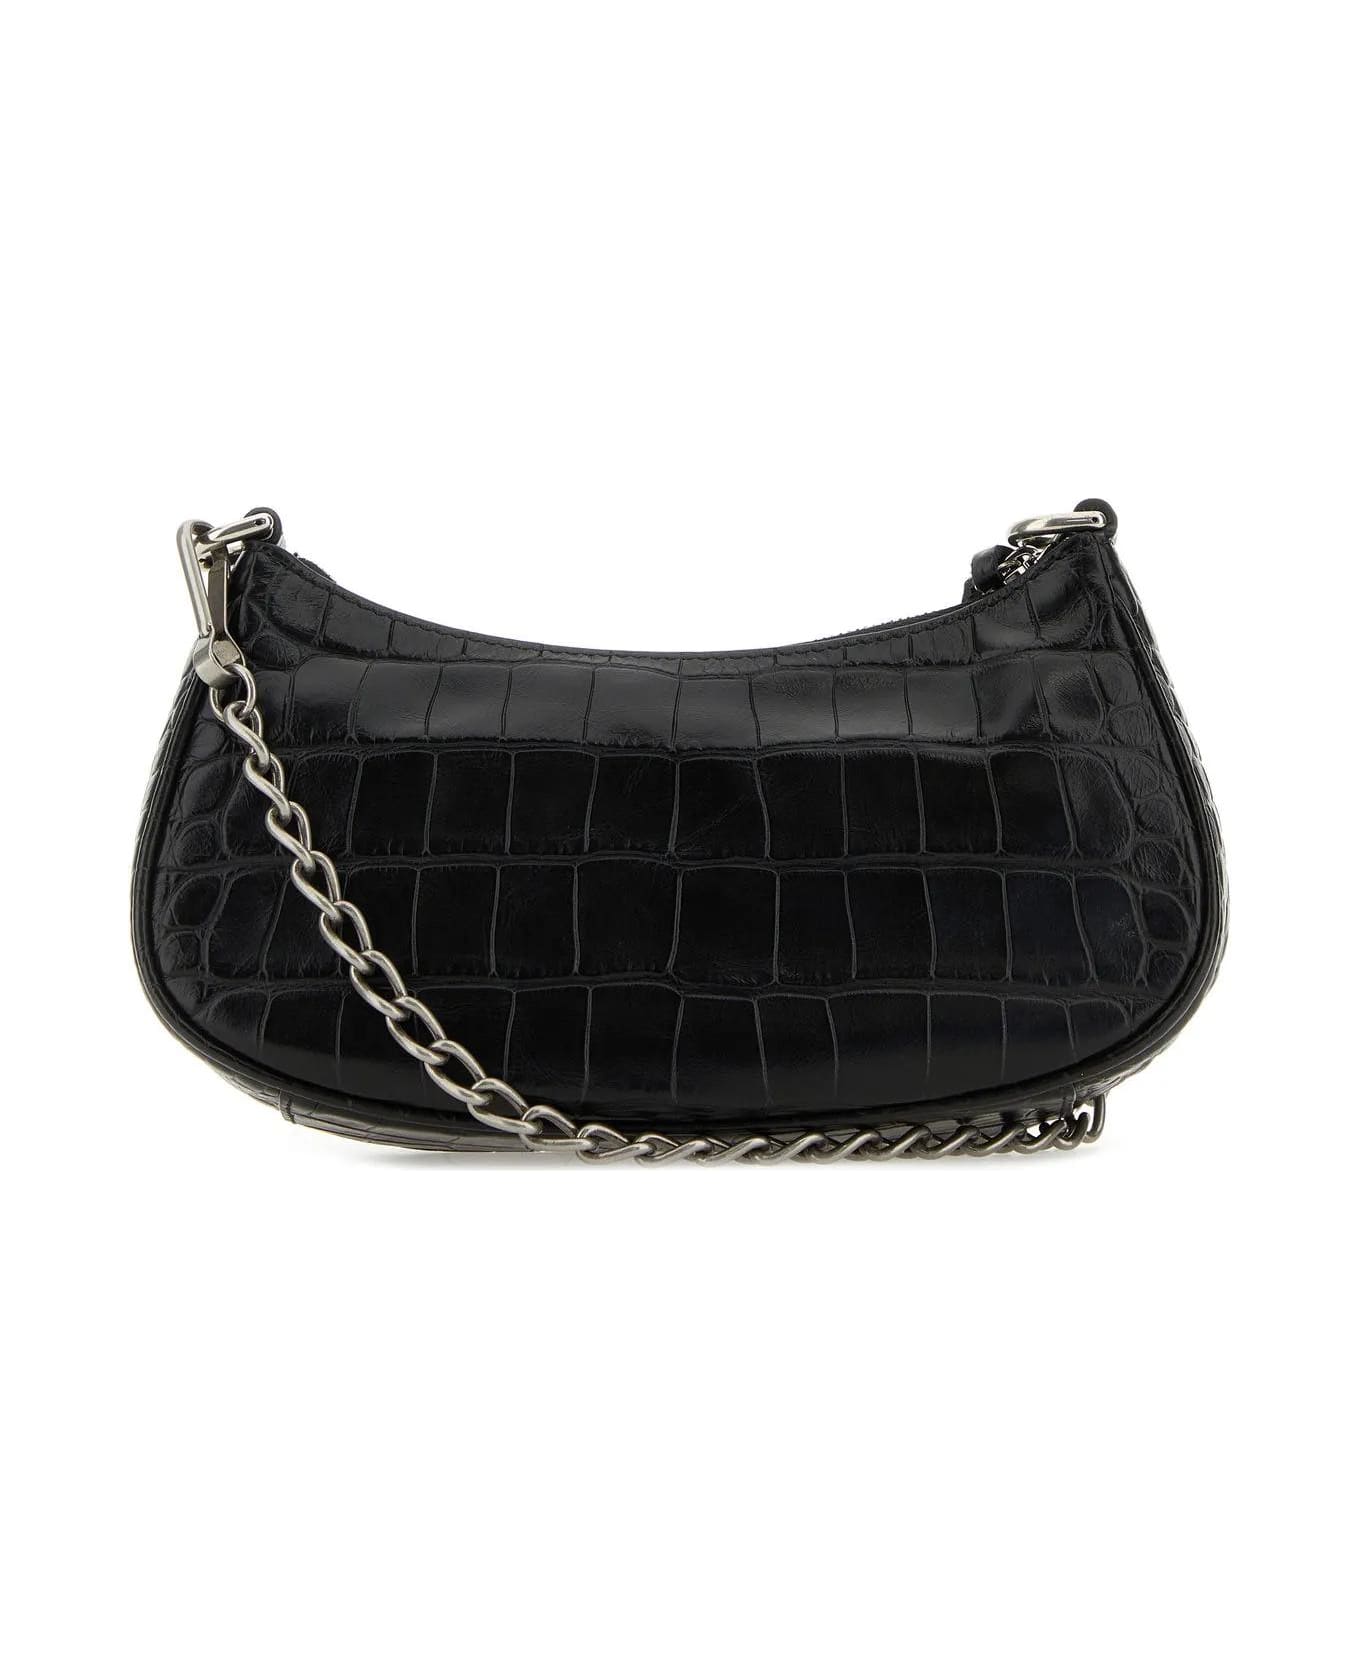 Balenciaga Black Leather Le Cagole Mini Handbag - Nero